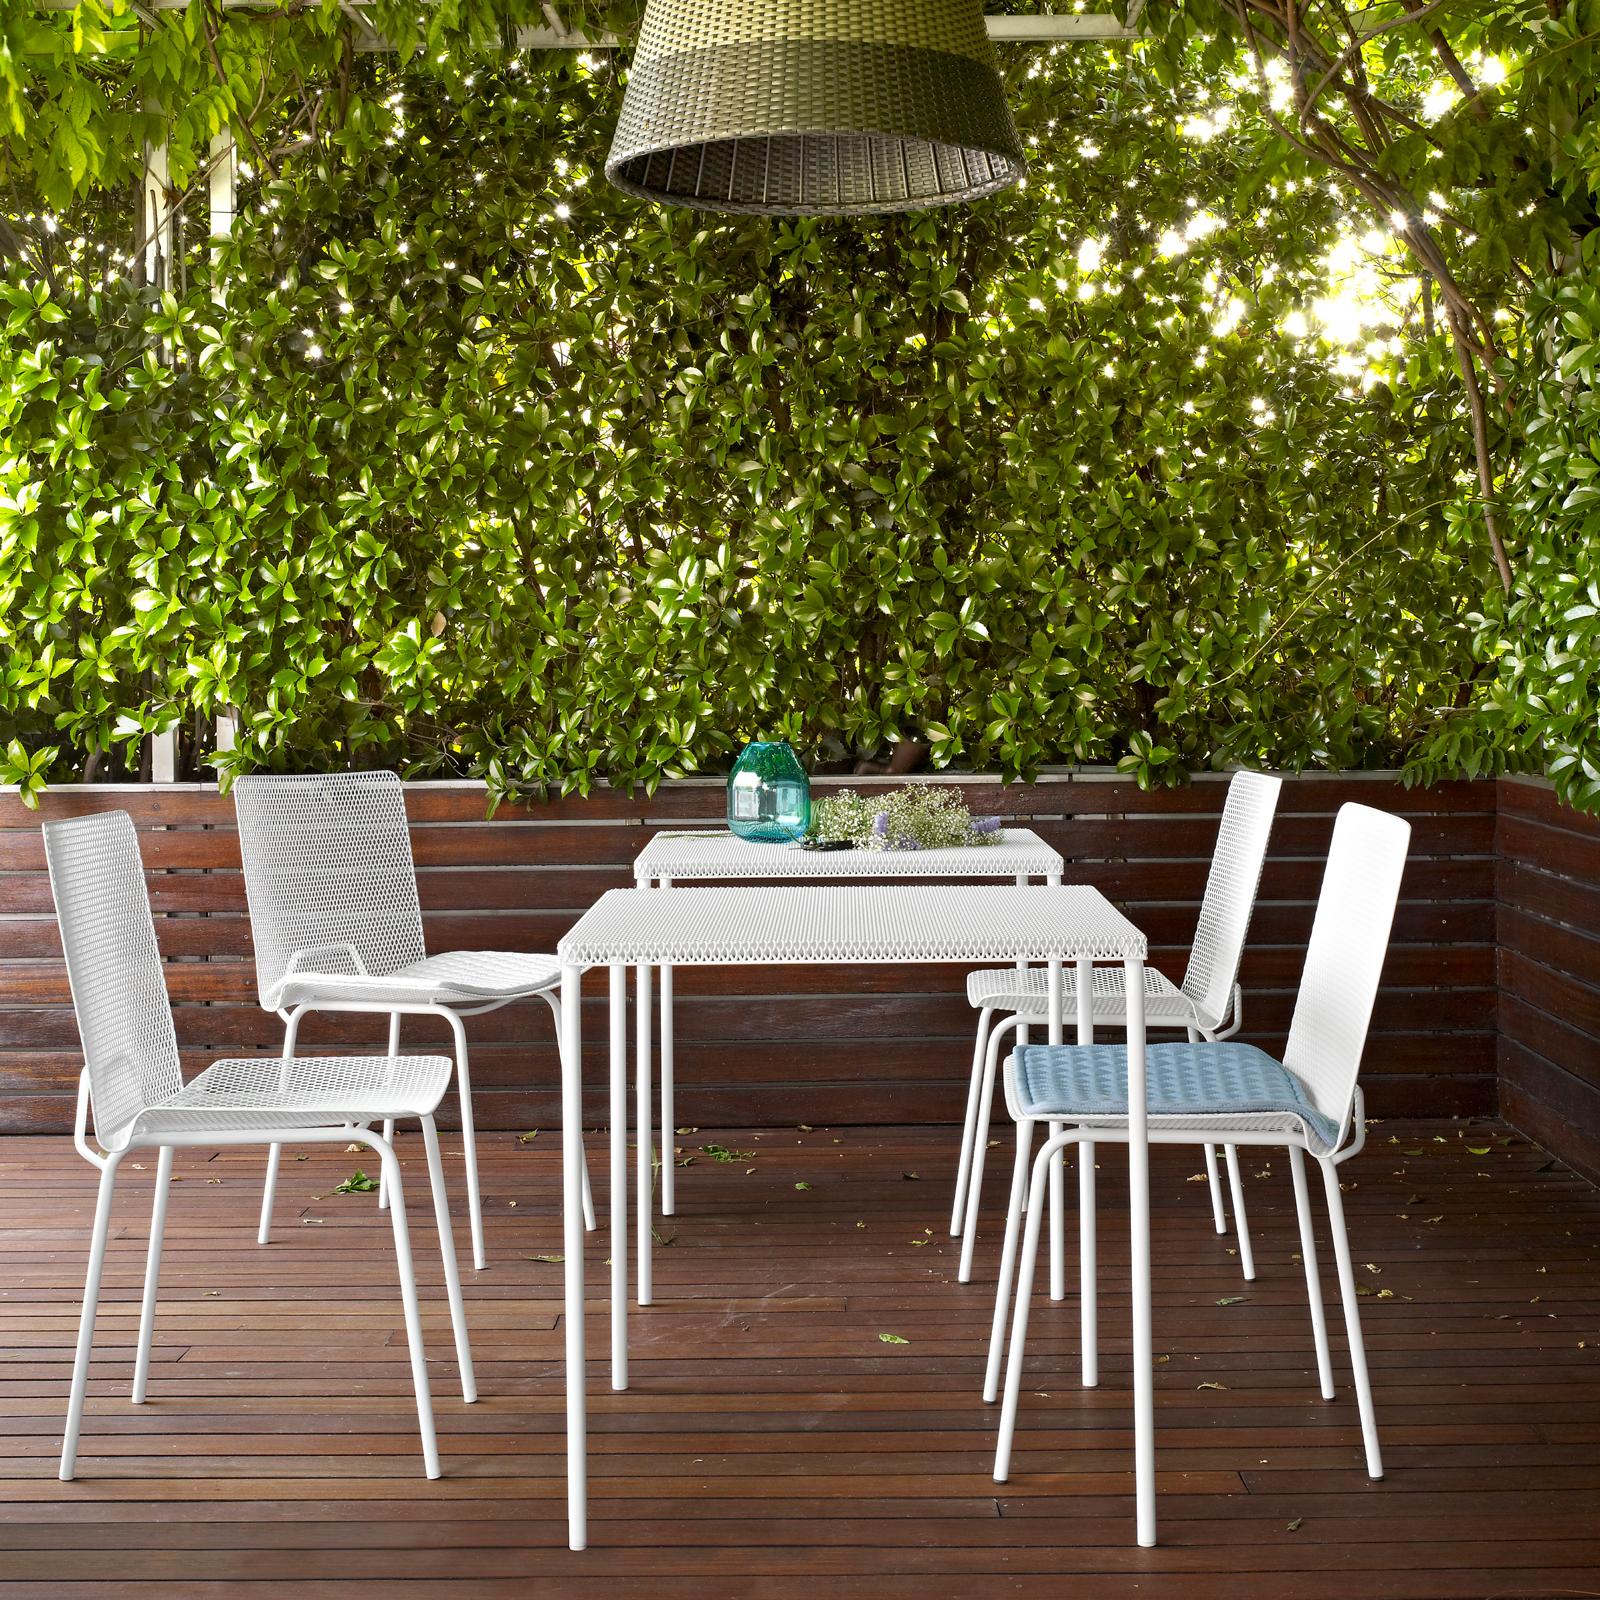 Esstisch "Grillage" für den Innen- und Außenbereich #gartenmöbel #weißerstuhl ©Ligne Roset